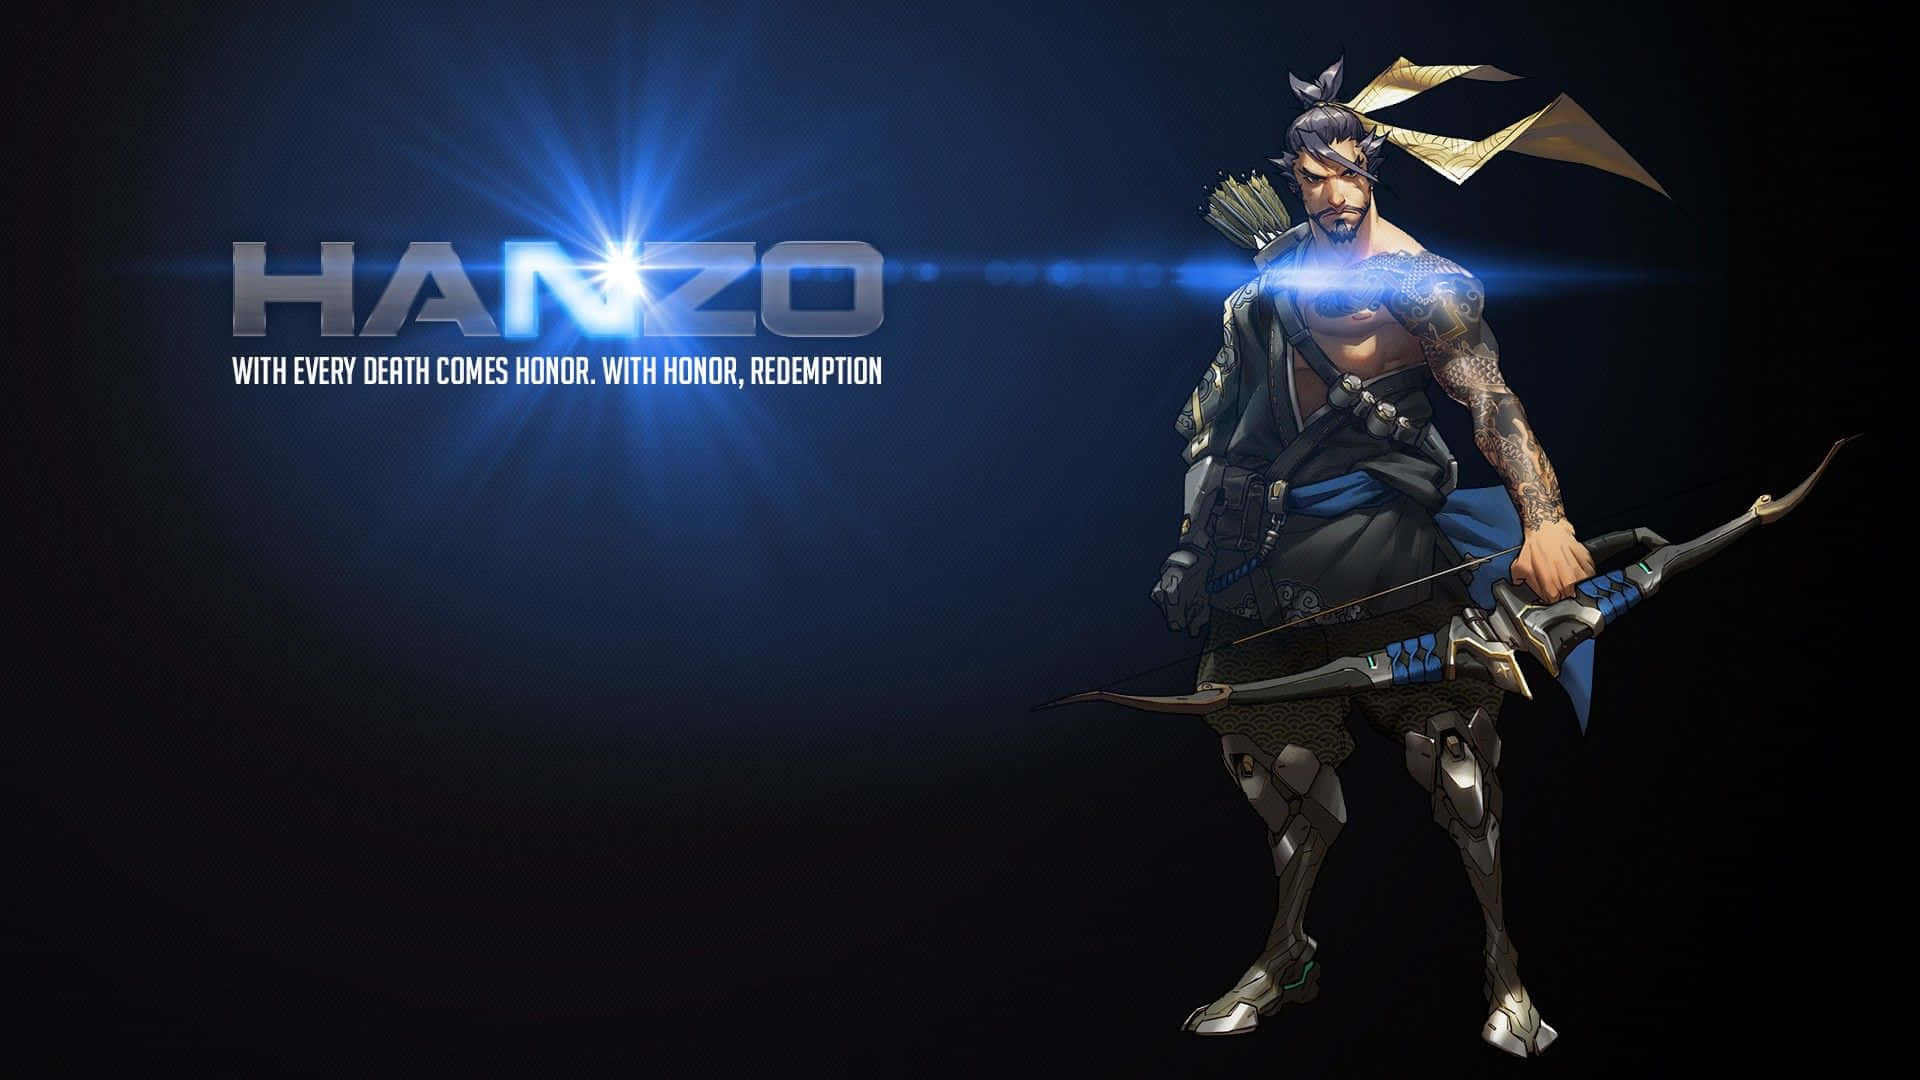 Skilled Archer Hanzo Preparing to Strike in Overwatch Wallpaper